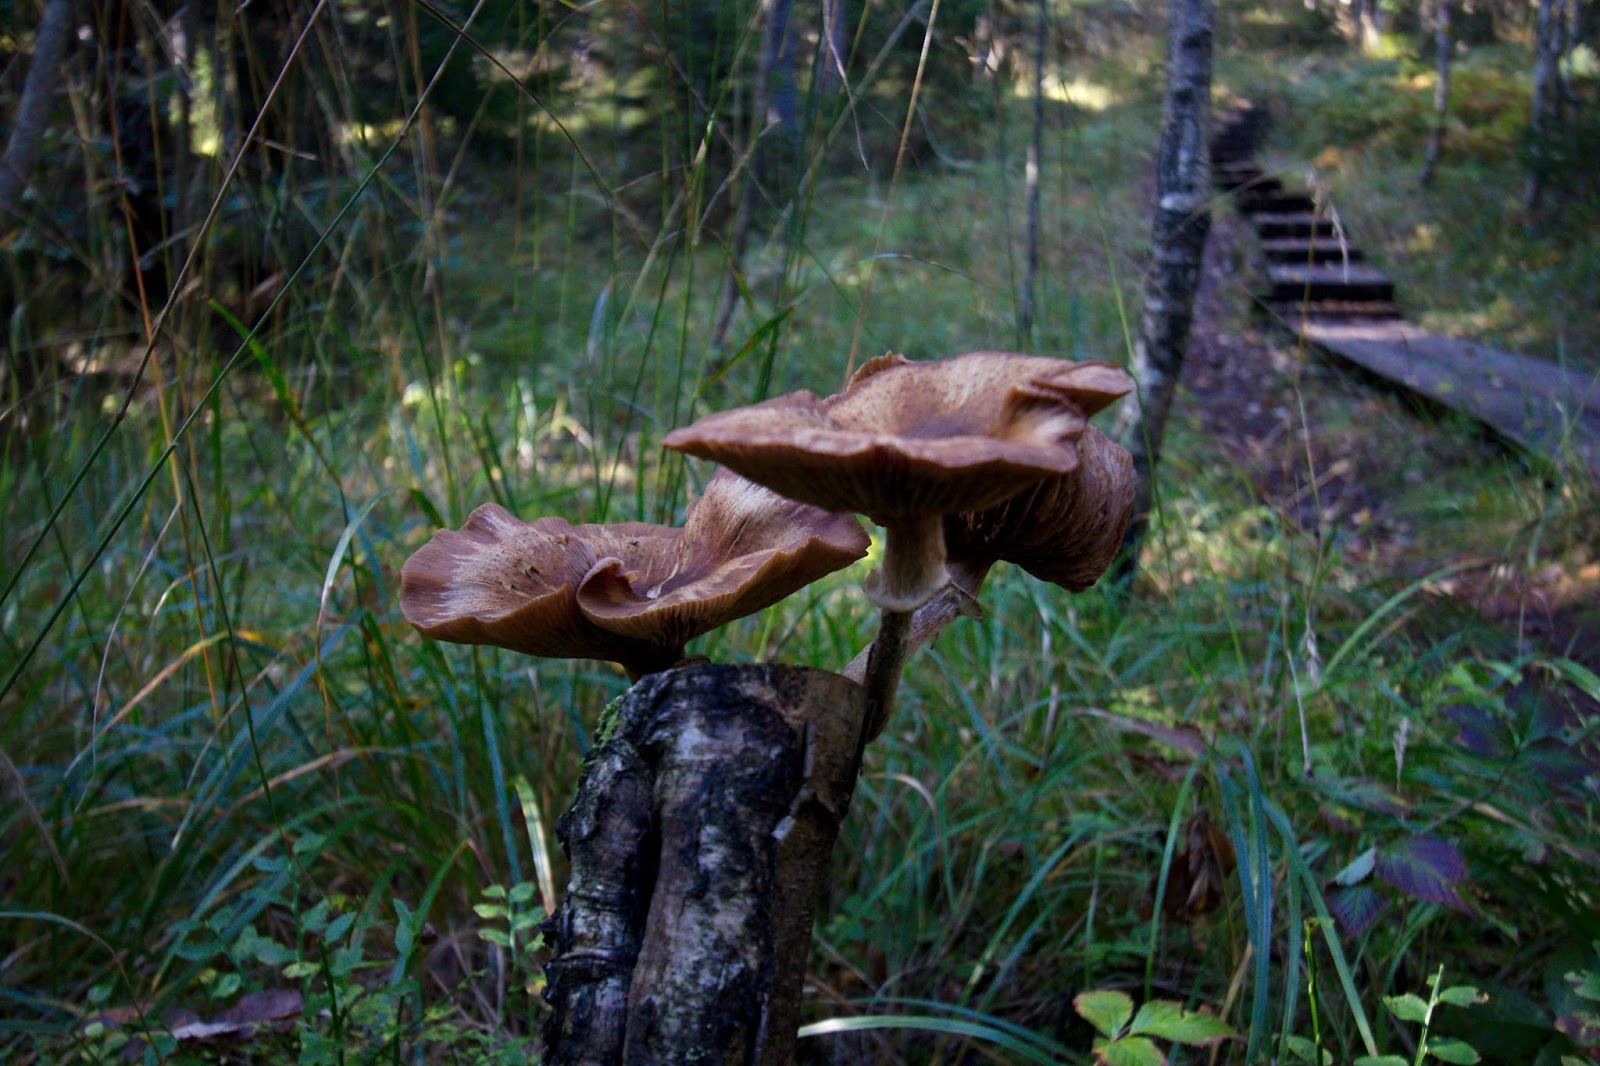 Kannon päässä kasvavia sieniä oli Karnaistenkorvessa paljon